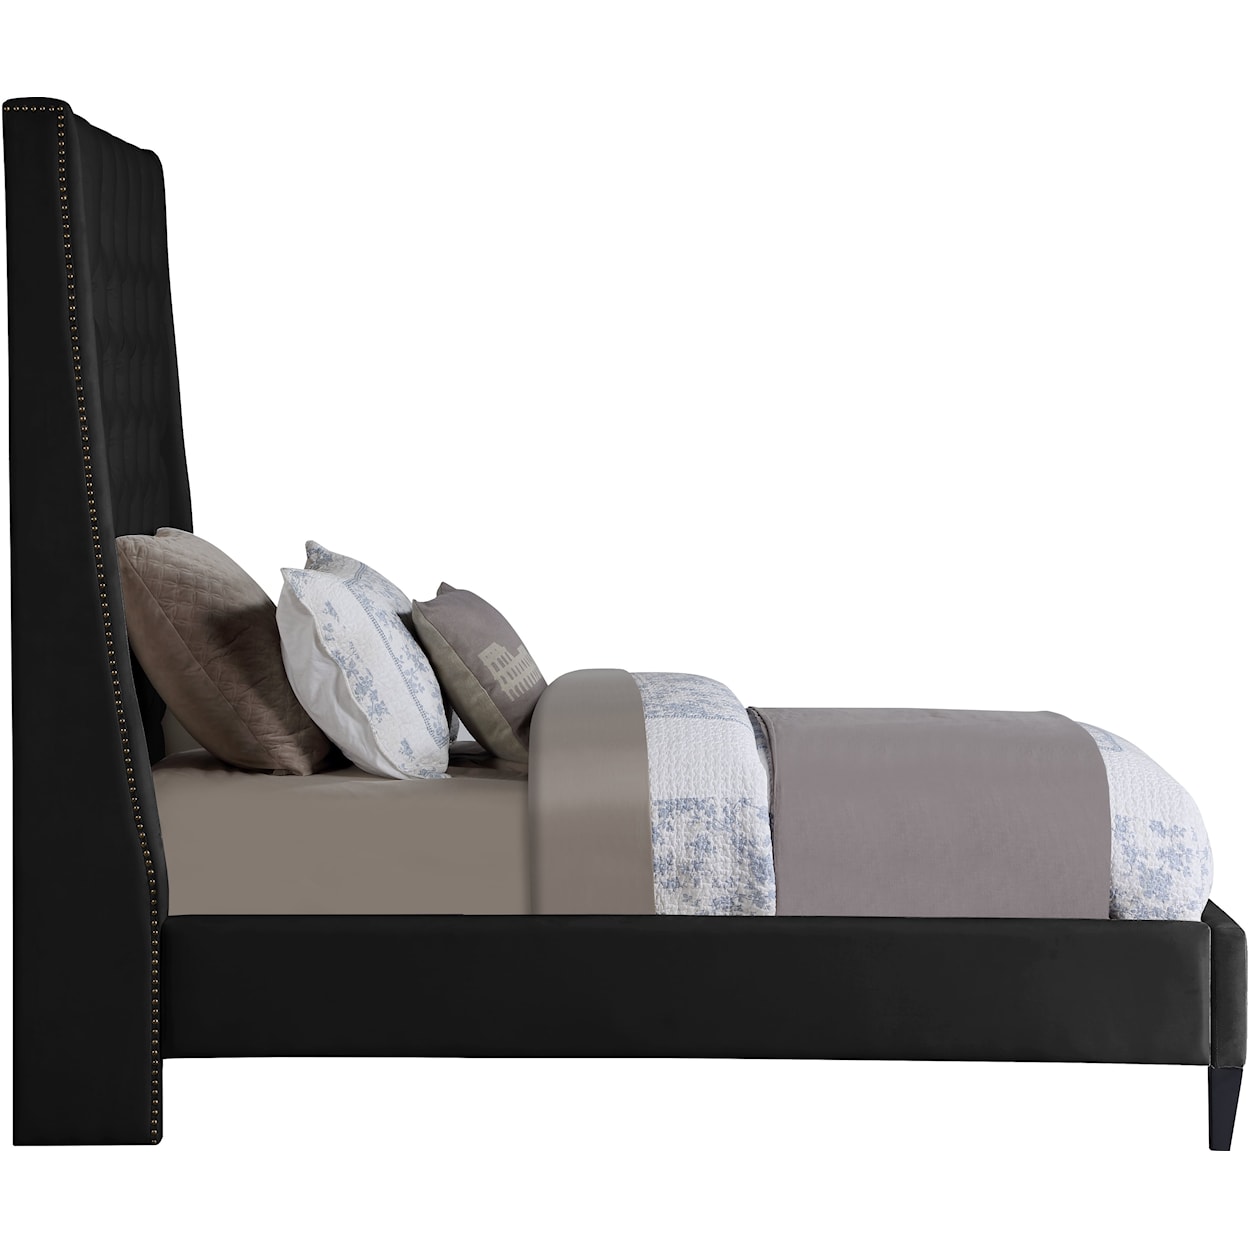 Meridian Furniture Fritz Upholstered Black Velvet Twin Bed 